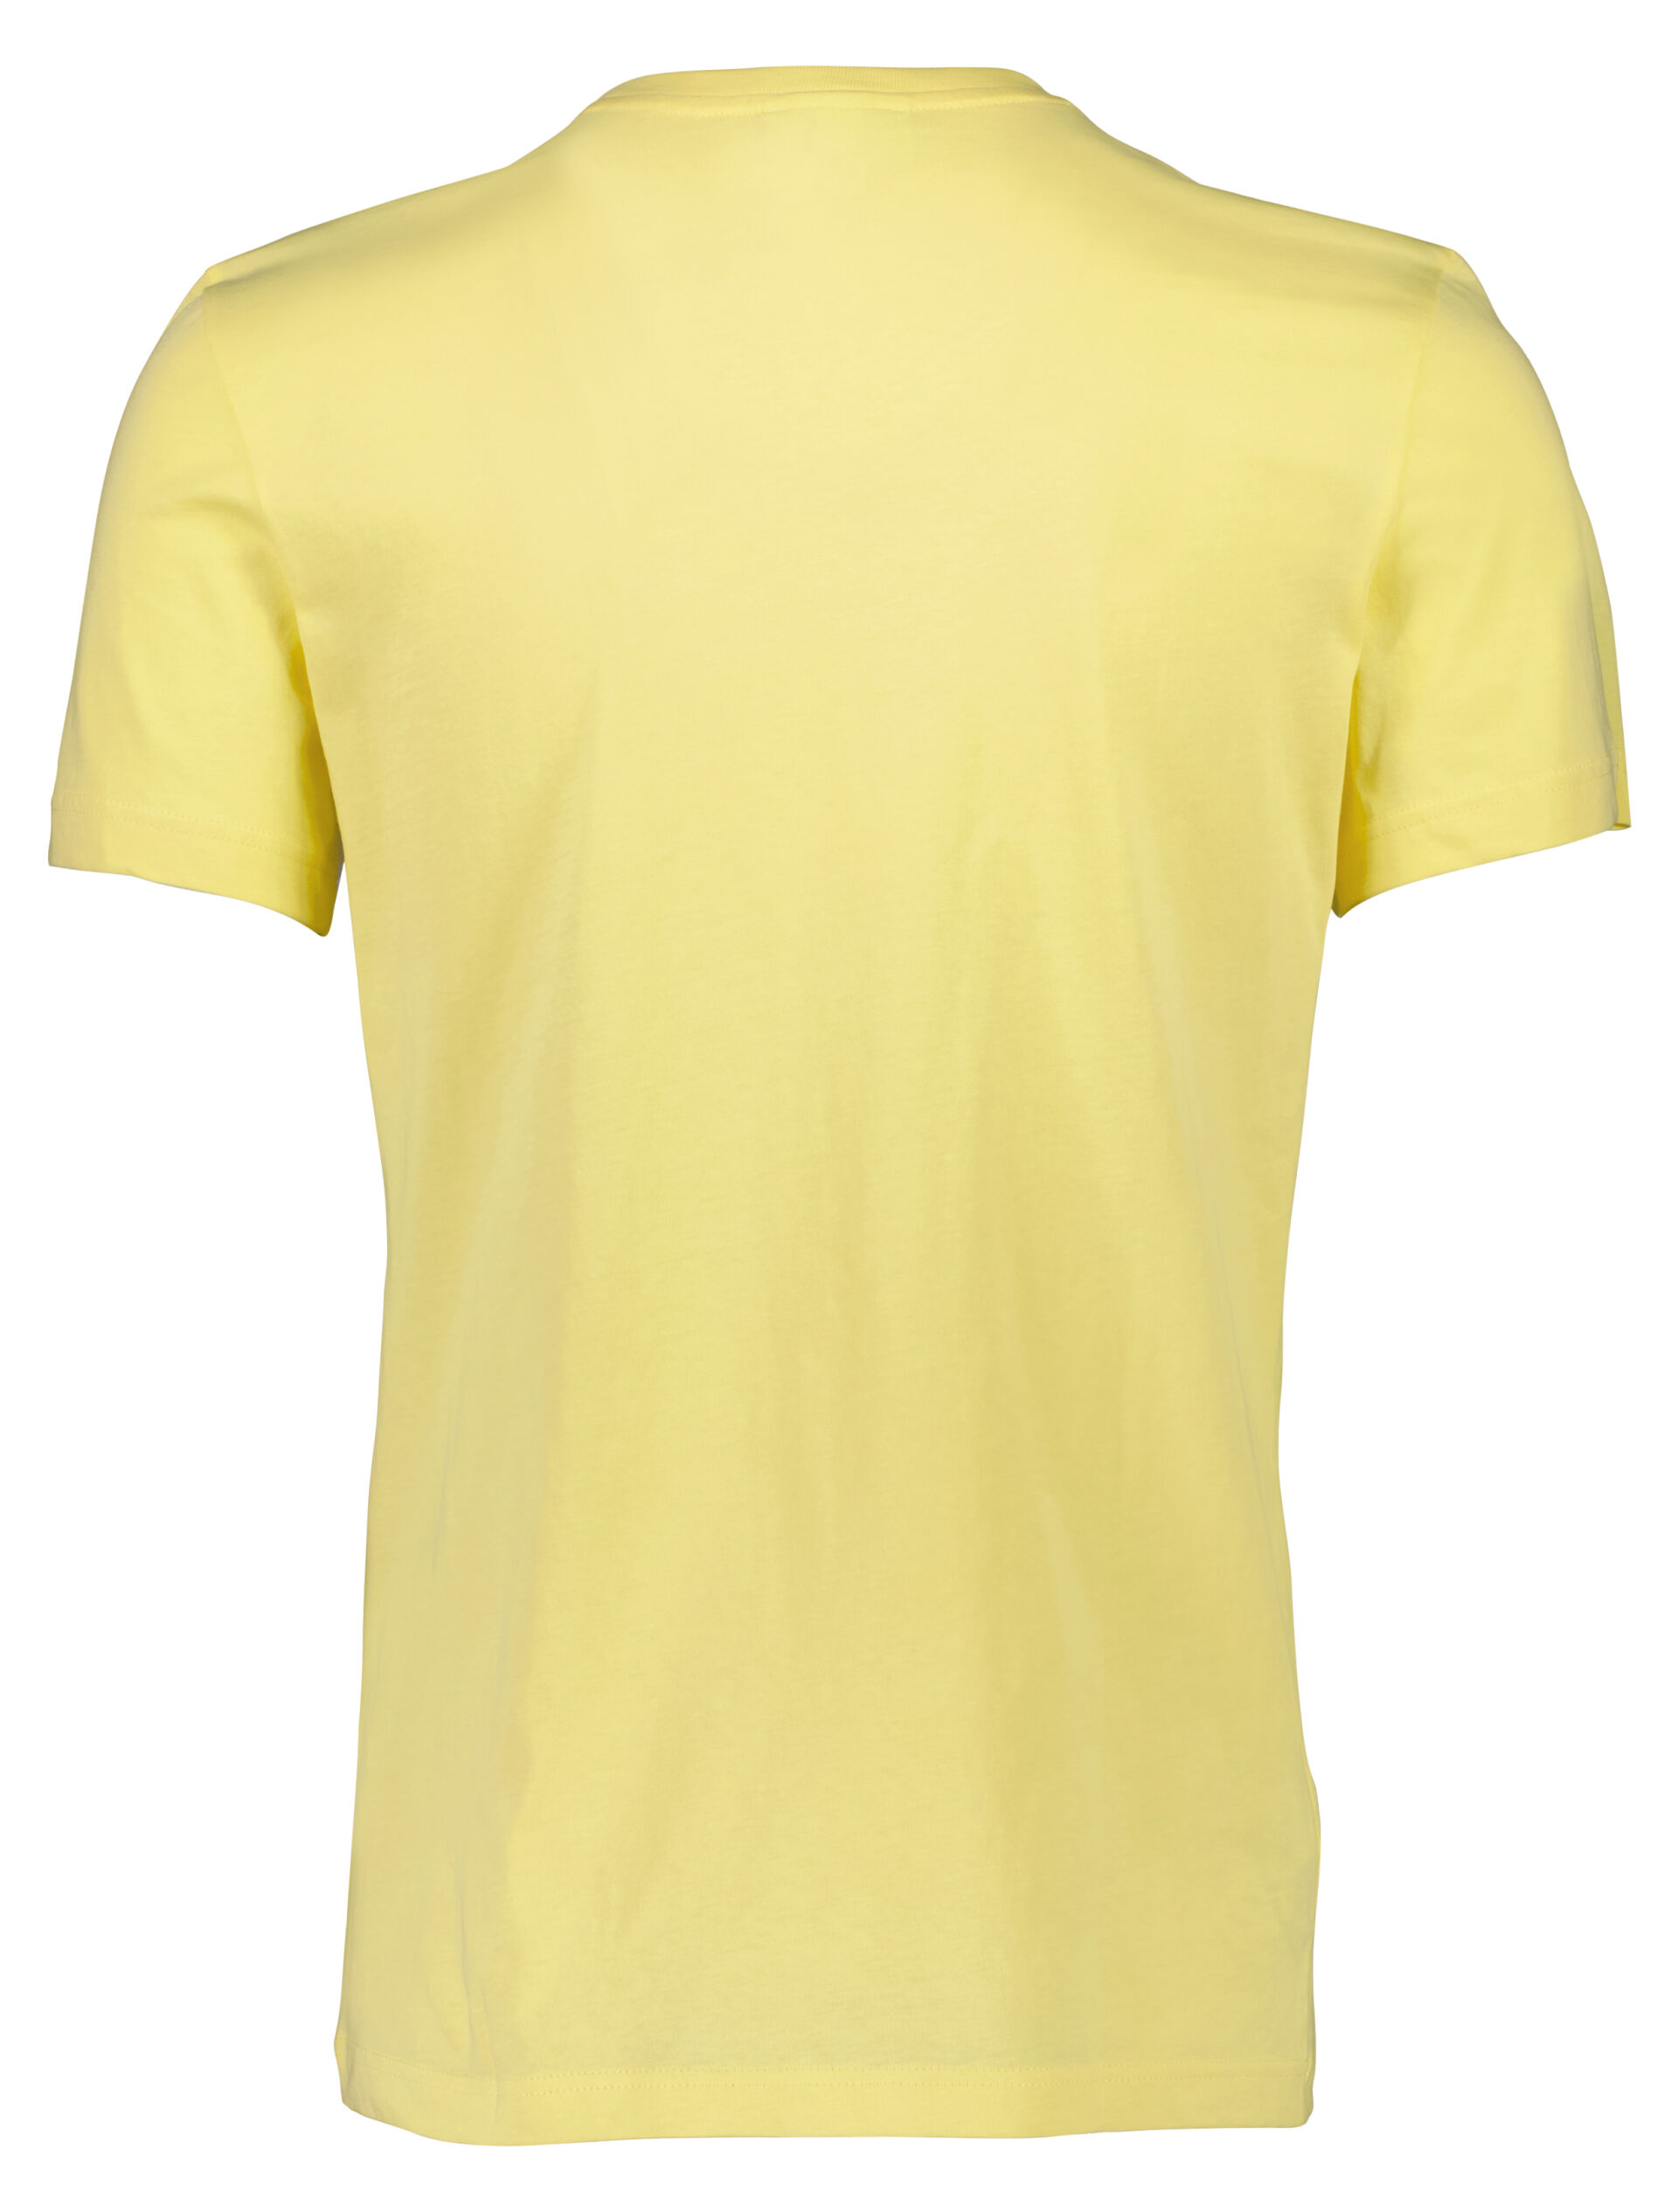 Lacoste  T-shirt 90-400662